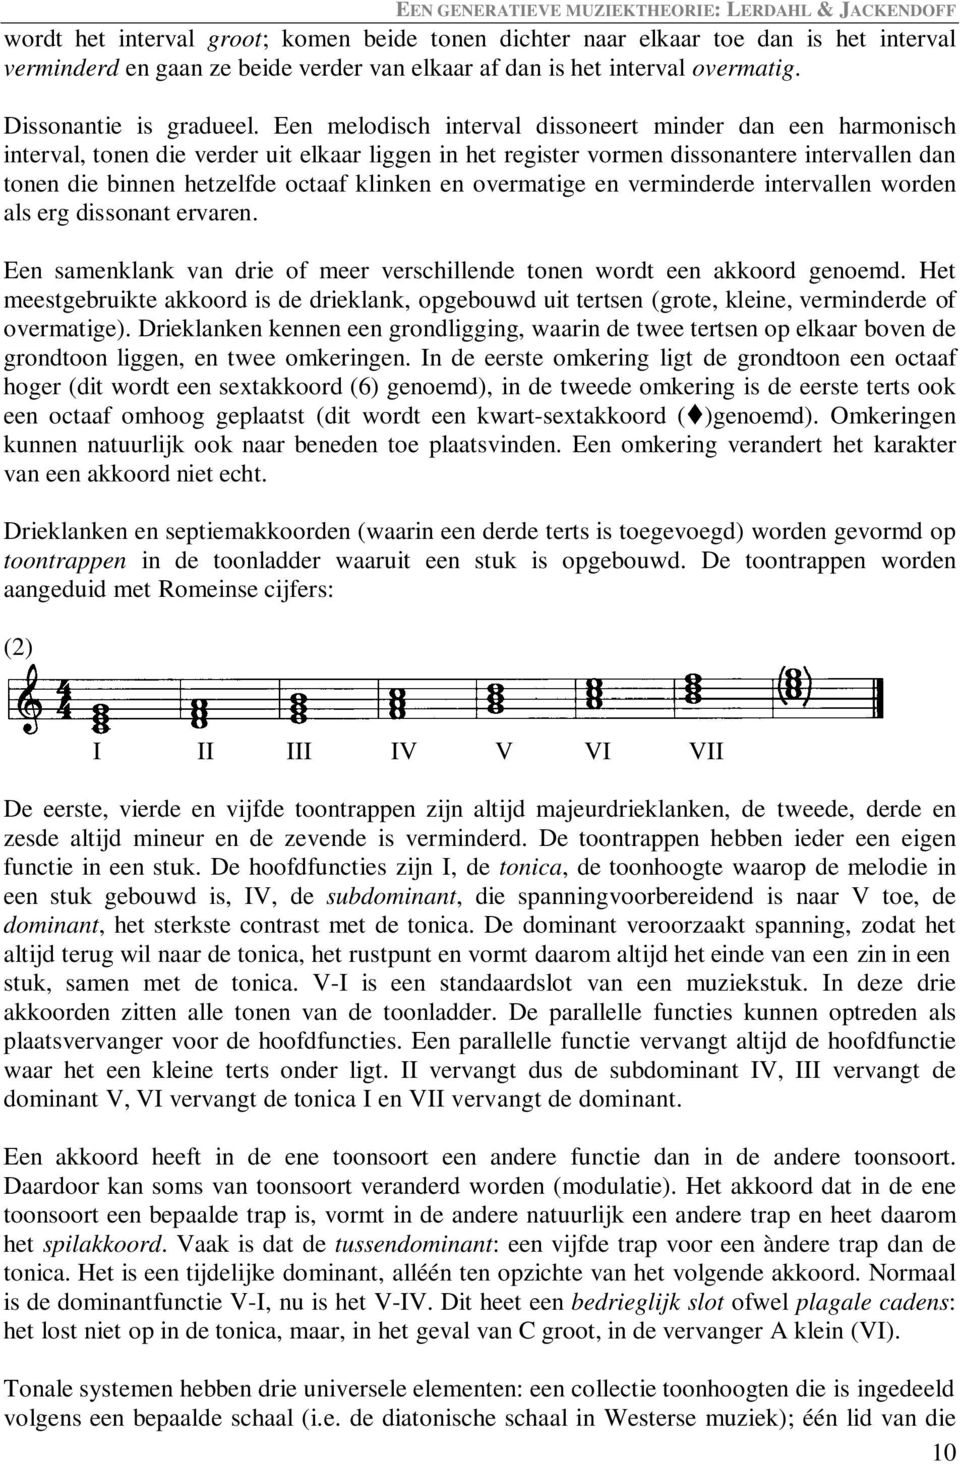 Een melodisch interval dissoneert minder dan een harmonisch interval, tonen die verder uit elkaar liggen in het register vormen dissonantere intervallen dan tonen die binnen hetzelfde octaaf klinken